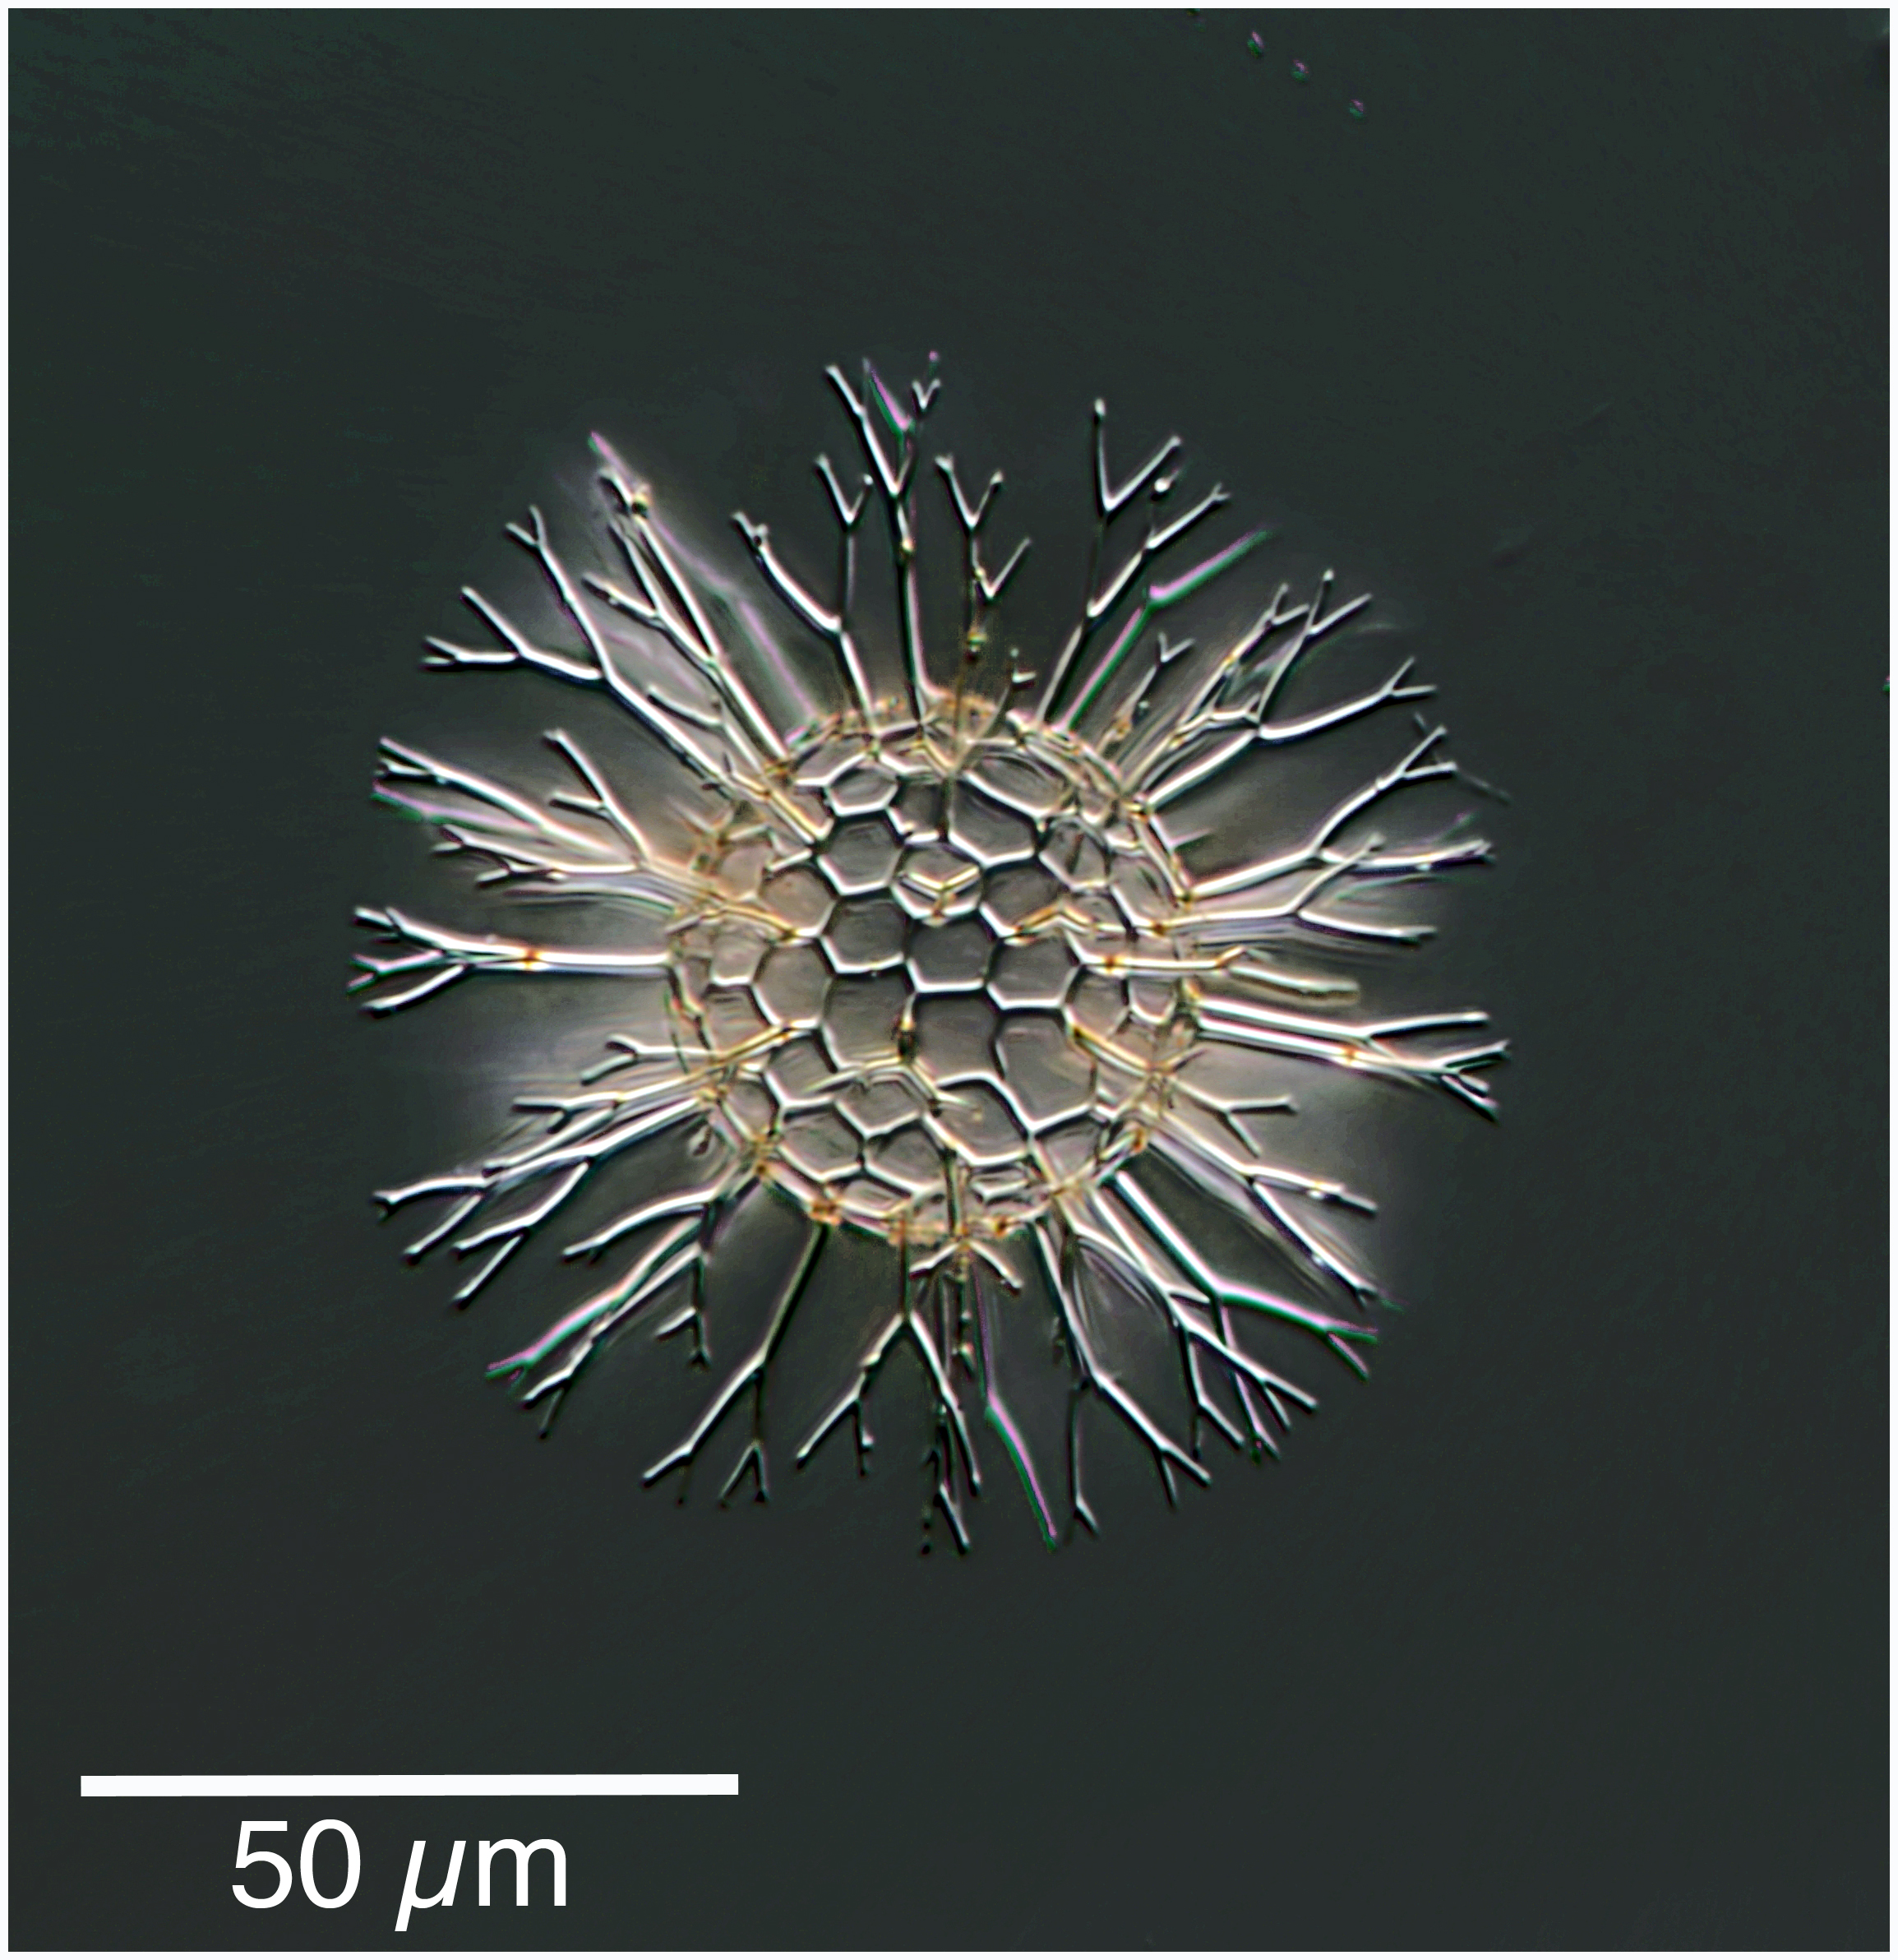 Staghorn Radiolarian : Cladococcus cervicornis (probably)